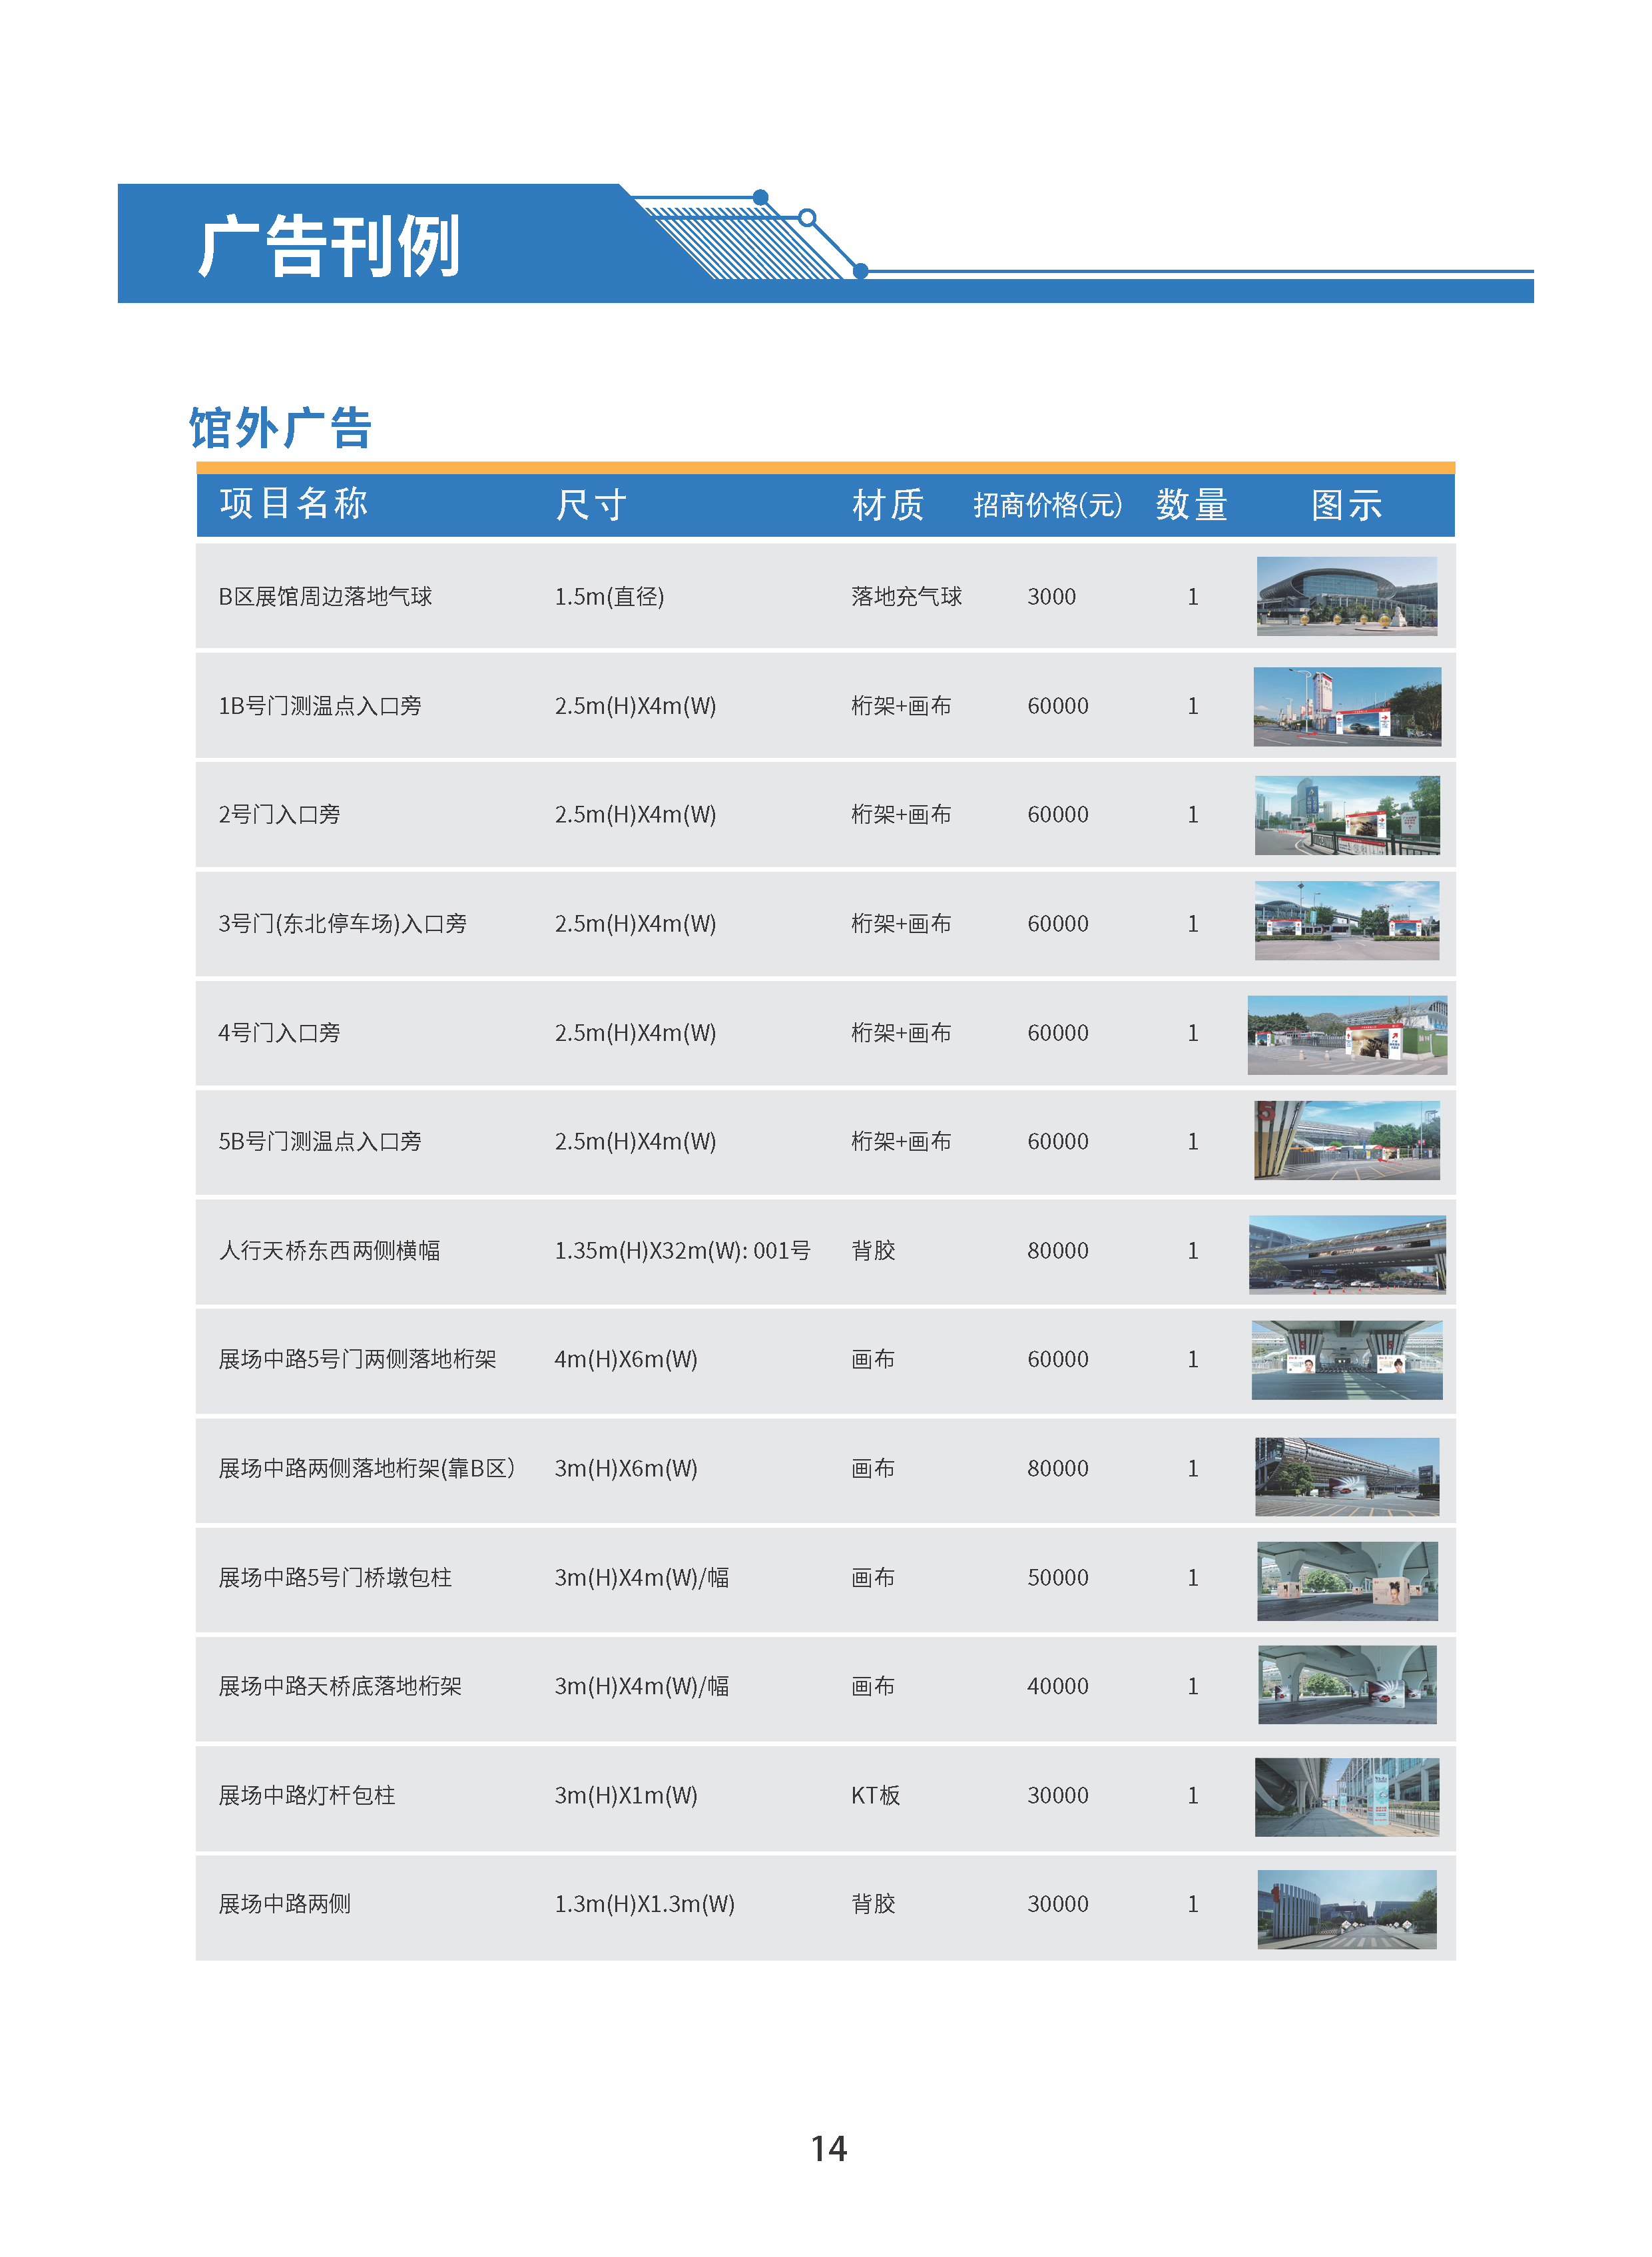 首届广州国际轨道交通展招商手册-0909_页面_17.png